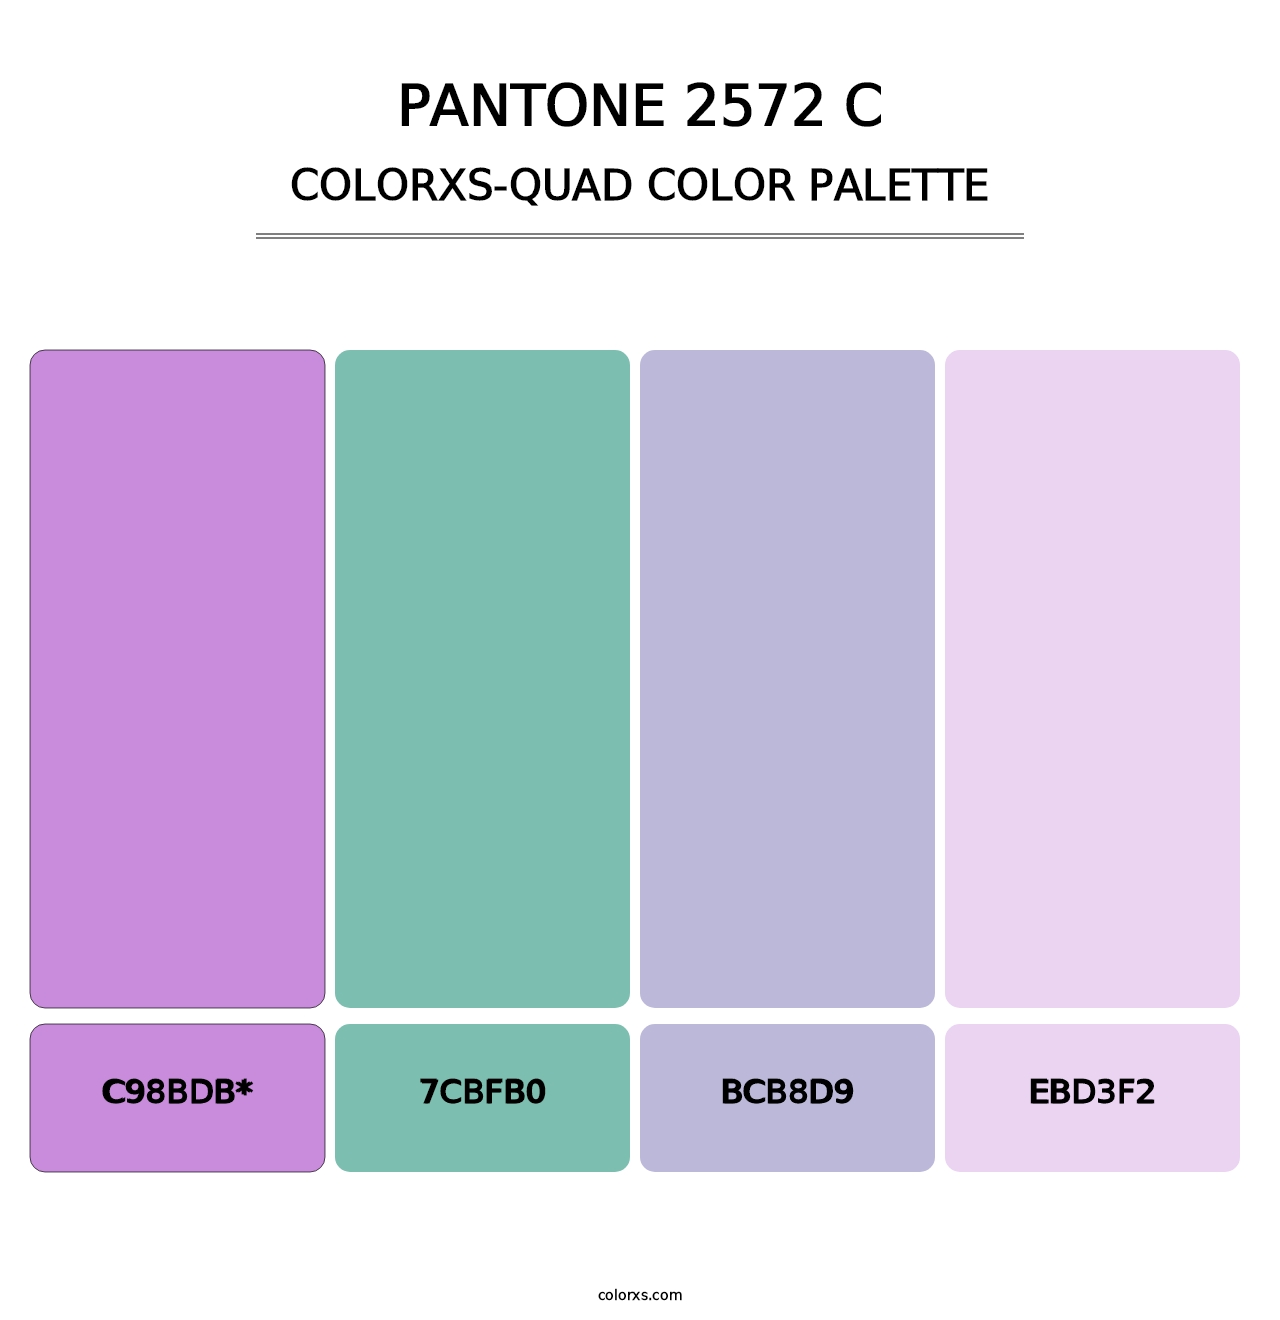 PANTONE 2572 C - Colorxs Quad Palette